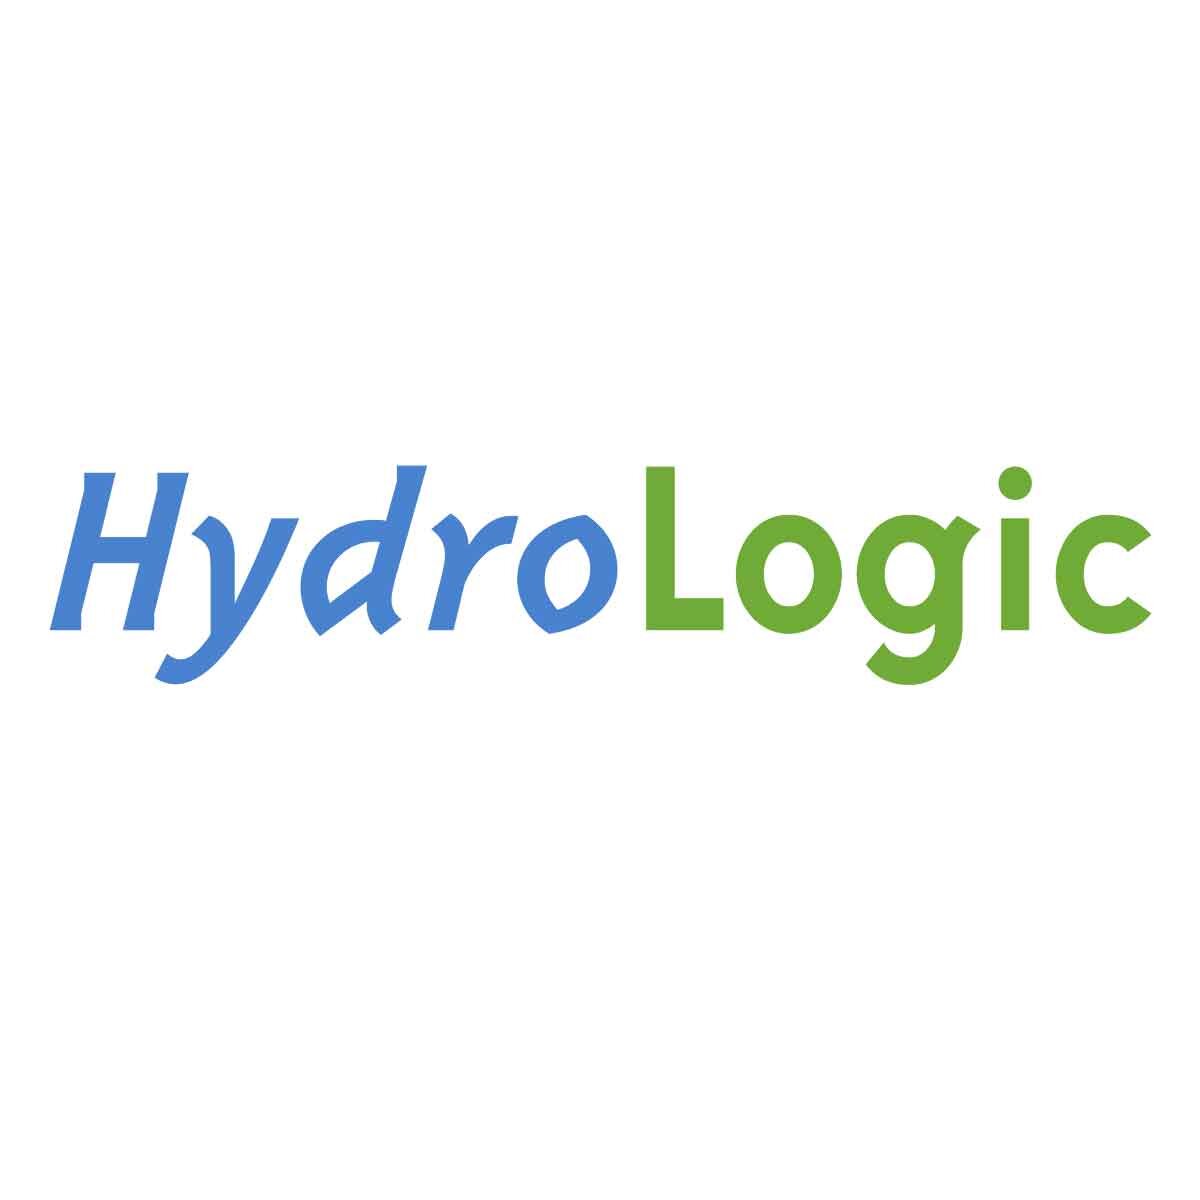 hydrologic.jpg